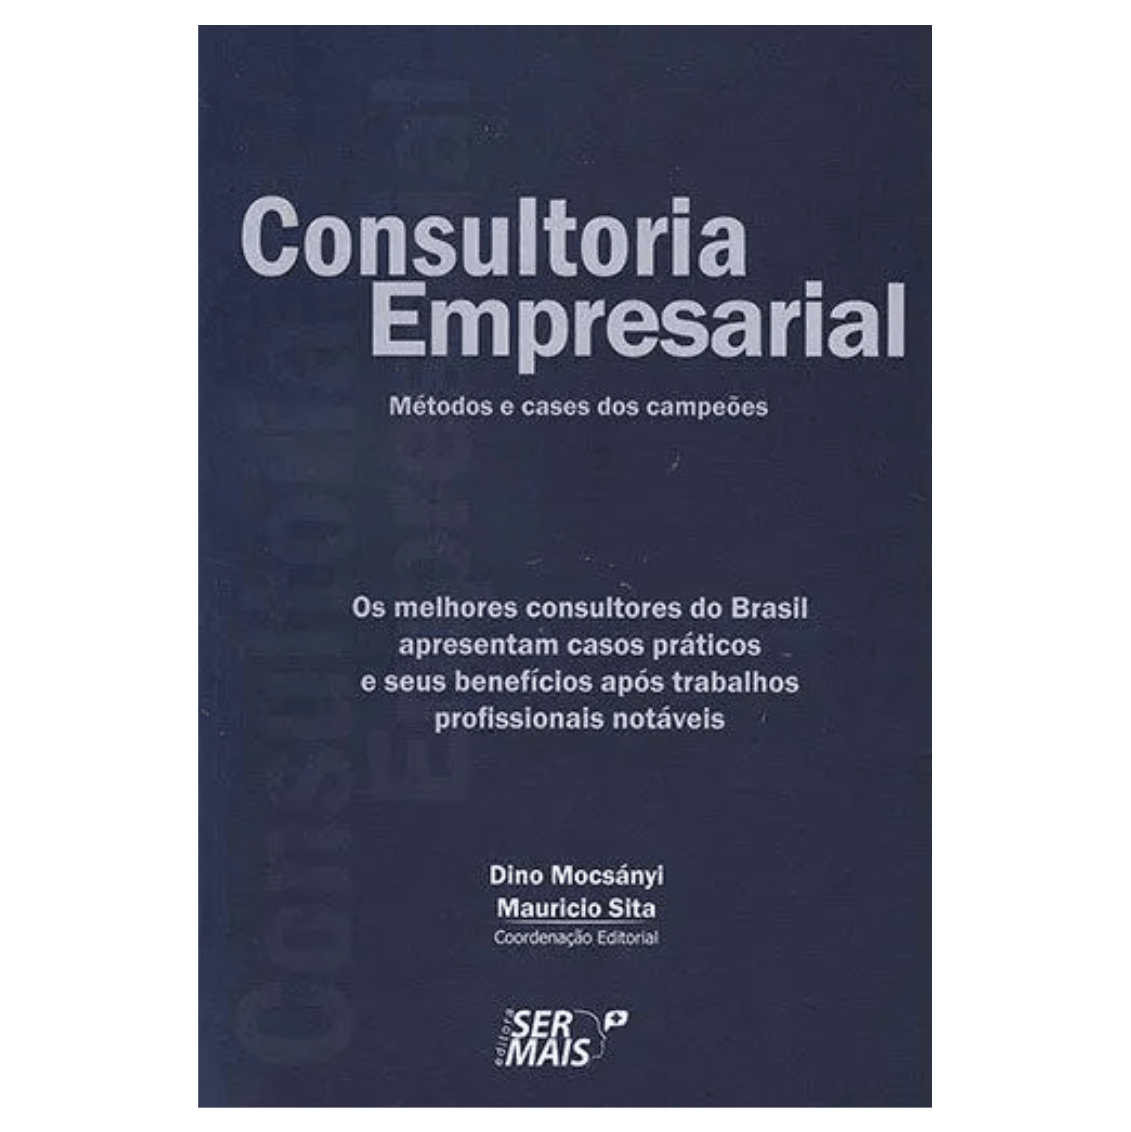 Consultoria empresarial: Os melhores consultores do brasil apresentam casos práticos e seus benefícios após trabalhos profissionais notáveis